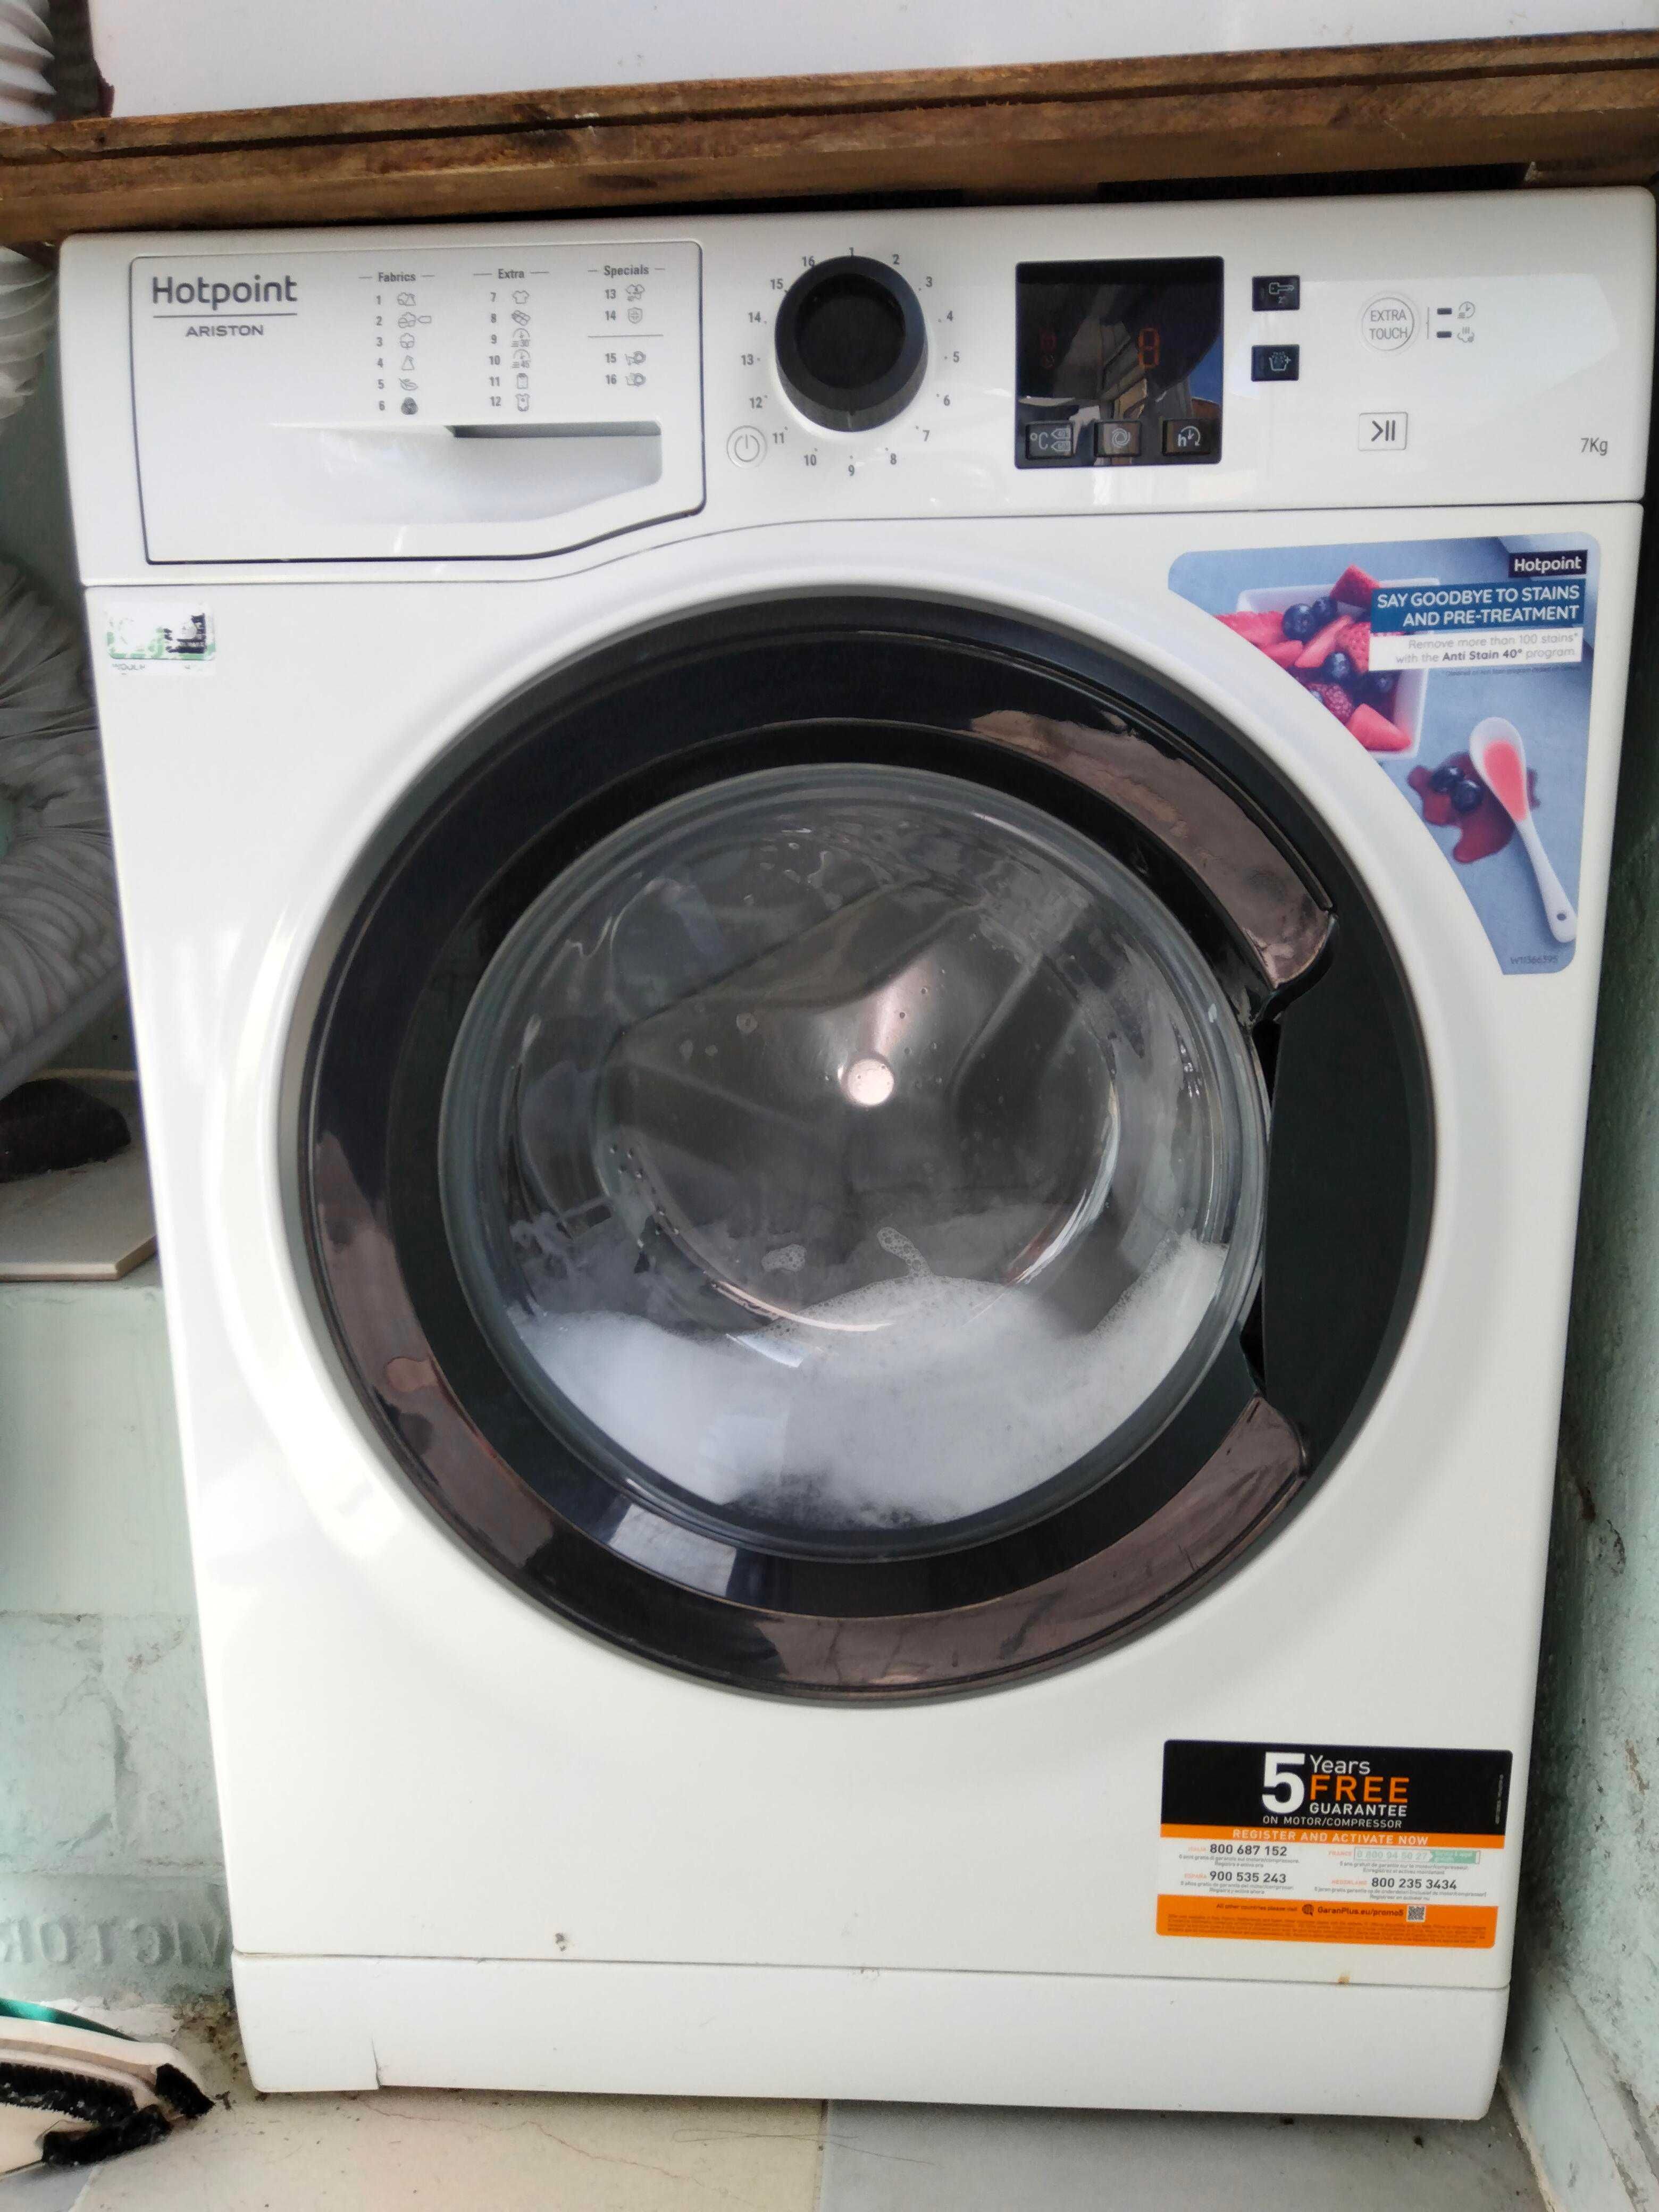 Vendo maquina de lavar de 7kg hotpoint